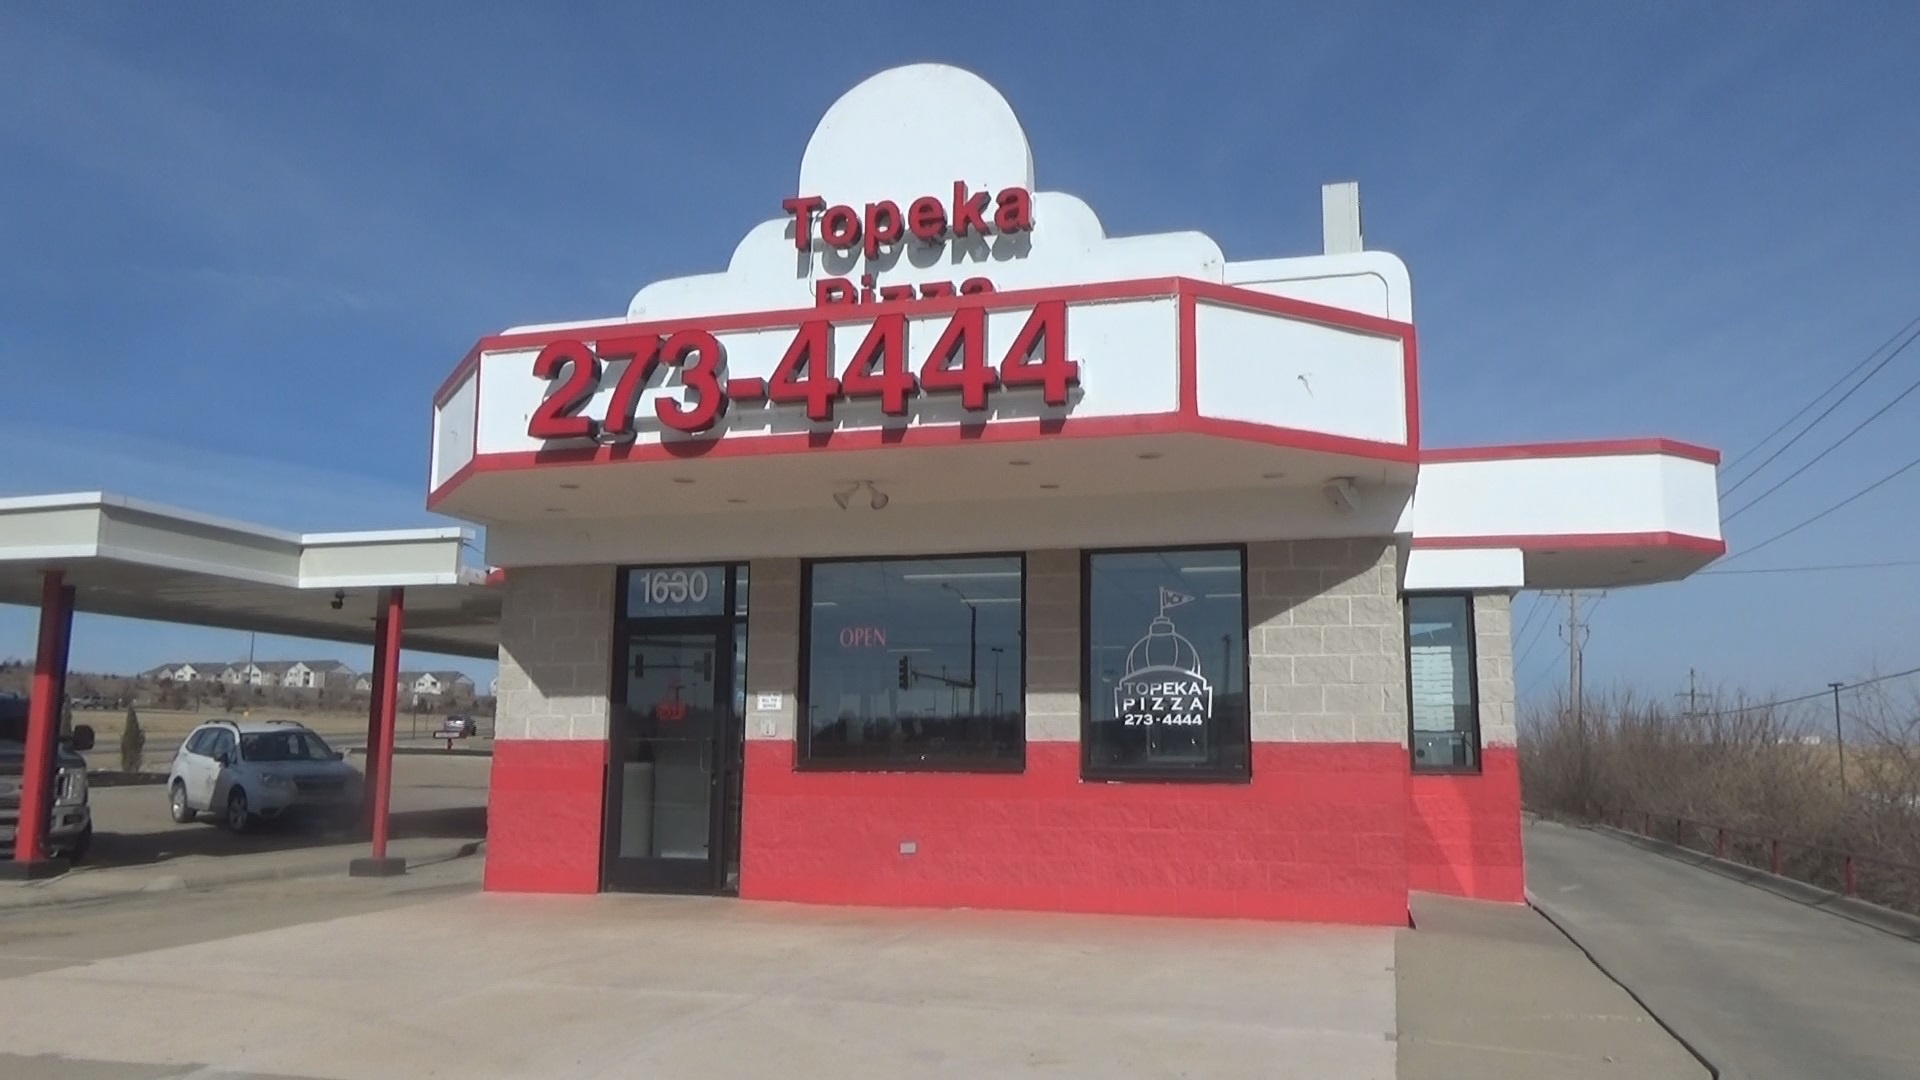 Topeka, Travels, New pizza place, Drive thru, 1920x1080 Full HD Desktop